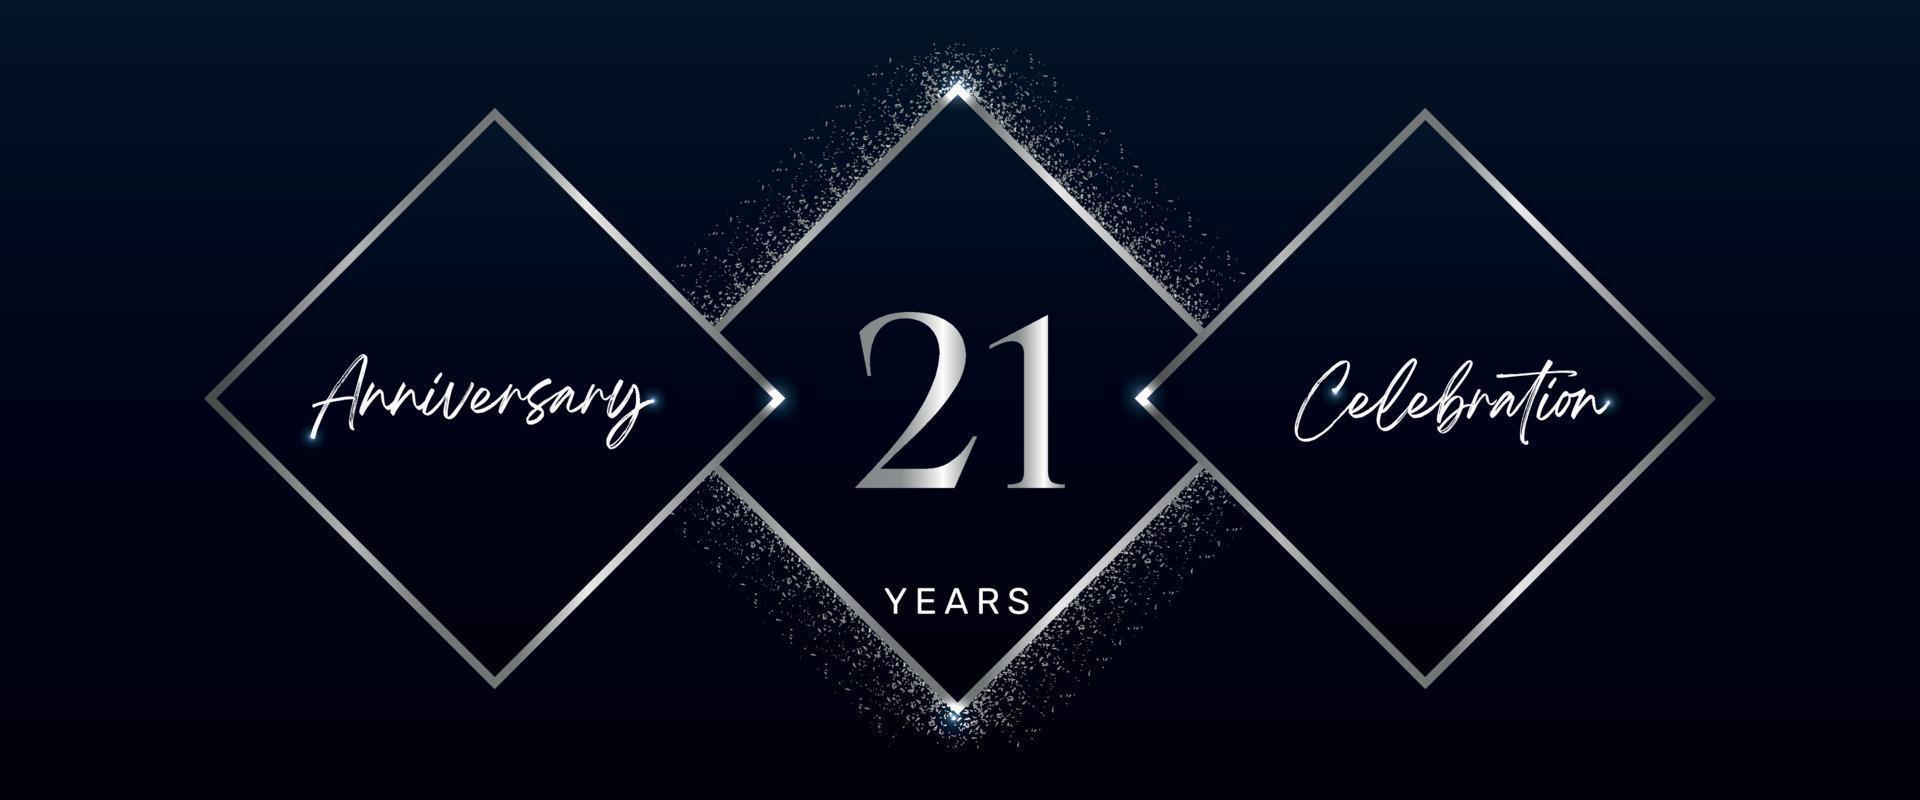 Logotipo de celebración de aniversario de 21 años. diseño vectorial para eventos de celebración de aniversario, fiesta de cumpleaños, tarjeta de felicitación, boda, tarjeta de invitación. vector de diseño de plantilla de aniversario de 21 años